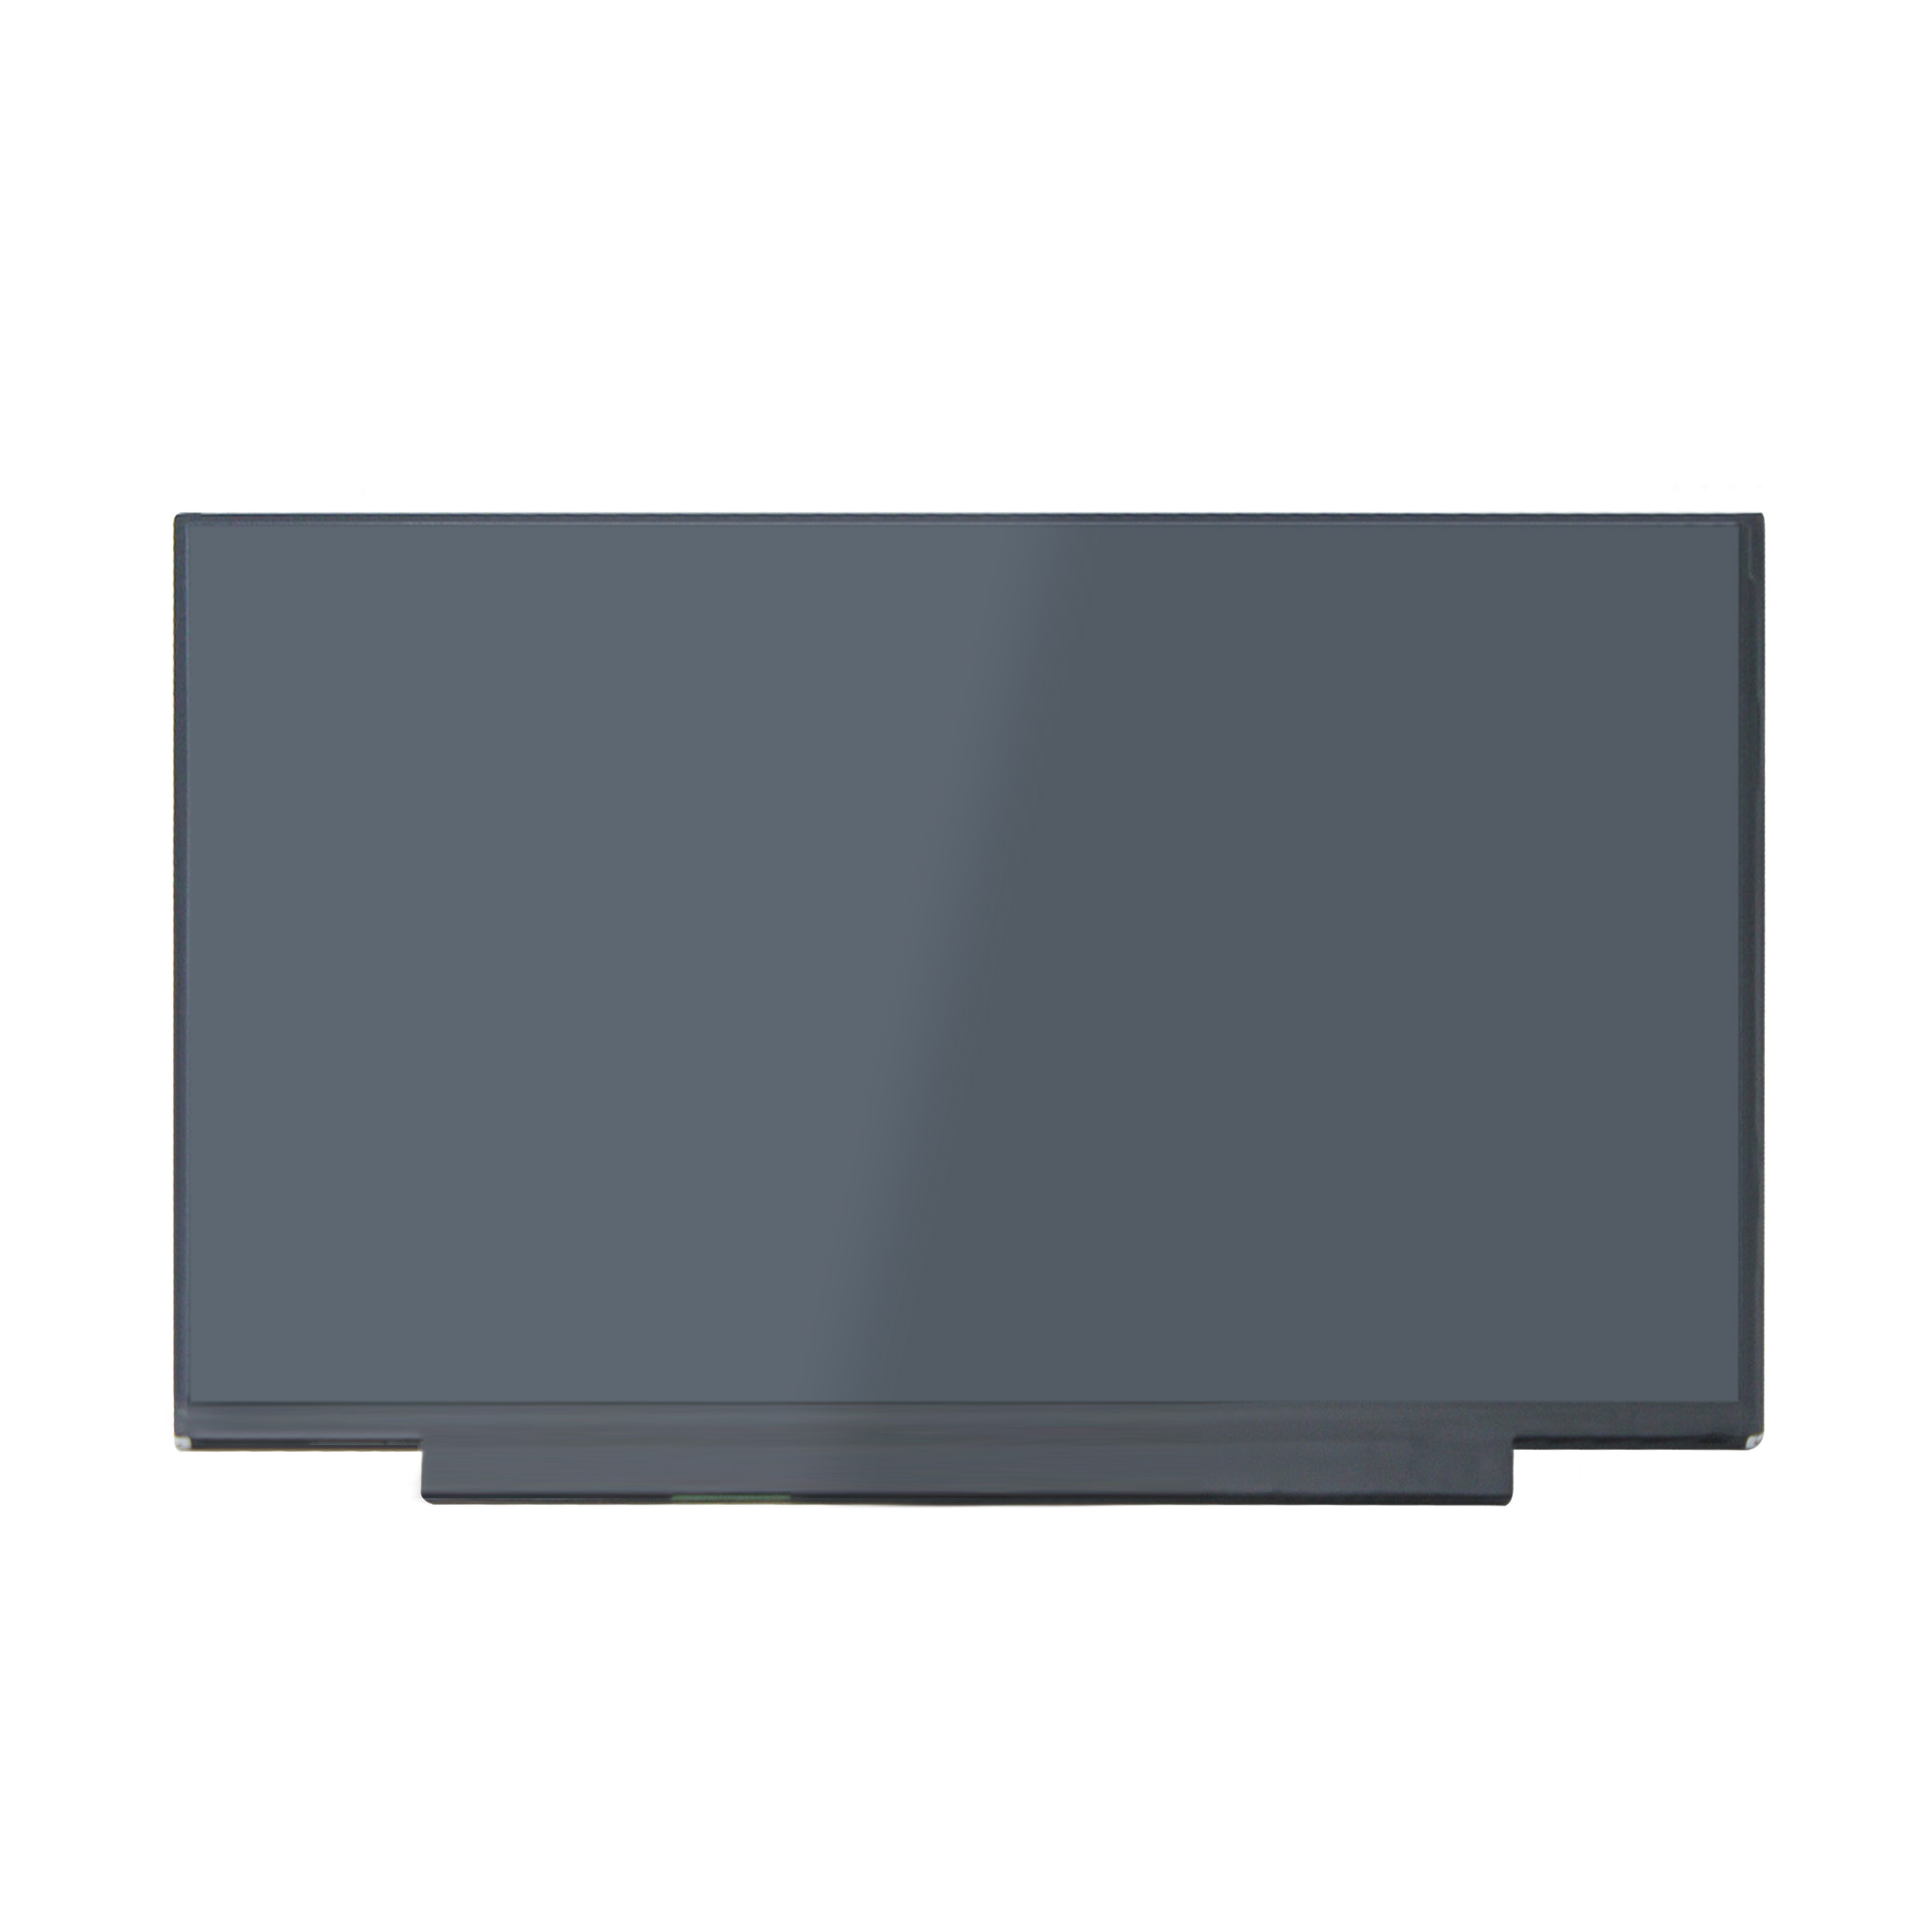 Yoothi 互換品 液晶 15.6インチ 東芝 Toshiba Dynabook C7 C7/P C7/M P1C7PPBL P1C7PPBG P1C7PPBW P1C7MPBL P1C7MPBW 対応 100 sRGB 60Hz 30ピン 1920x1080 FullHD IPS LED LCD 液晶ディスプレイ 修理交換用液晶パネル